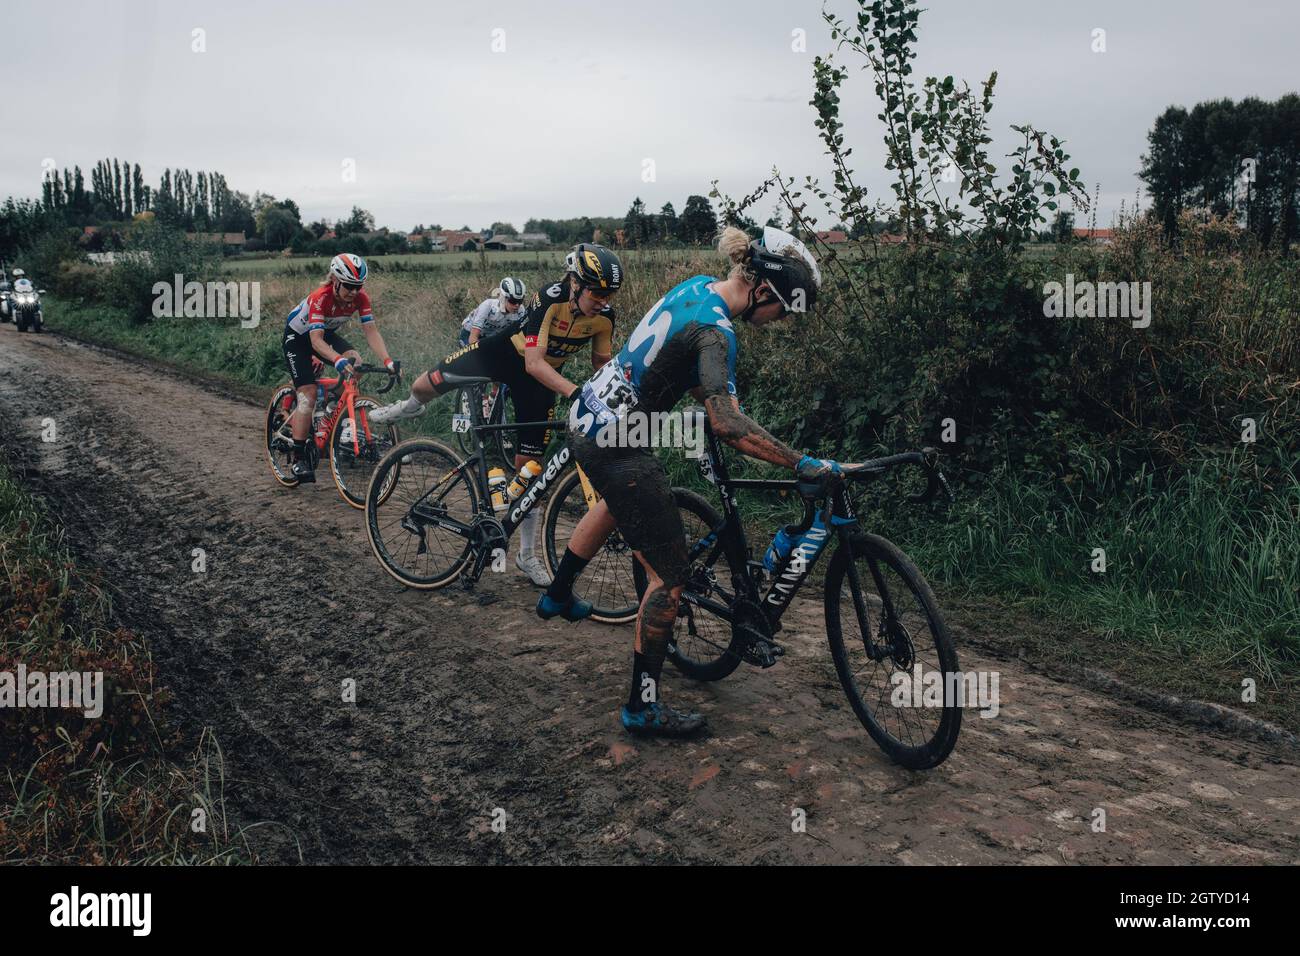 2 octobre 2021, Paris&#x2013;Roubaix Cyclisme Tour, la toute première édition féminine de Paris Roubaix qui est célèbre pour son parcours inégal de pavés. Les coureurs reviennent sur les vélos après leurs chutes Banque D'Images